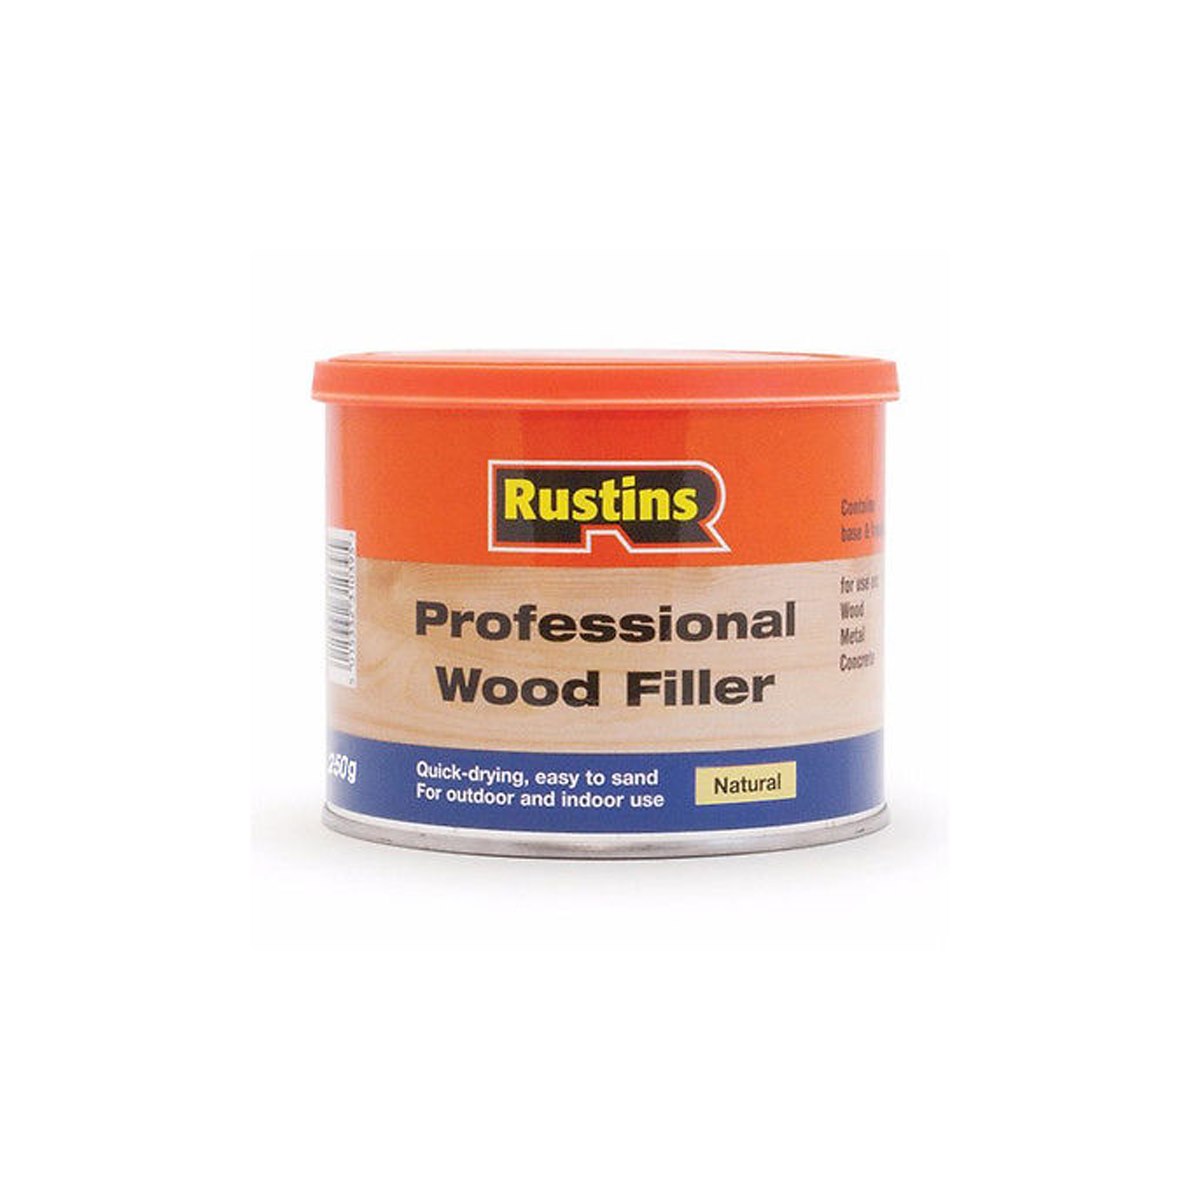 Rustins Professional Wood Filler Natural 1 kg